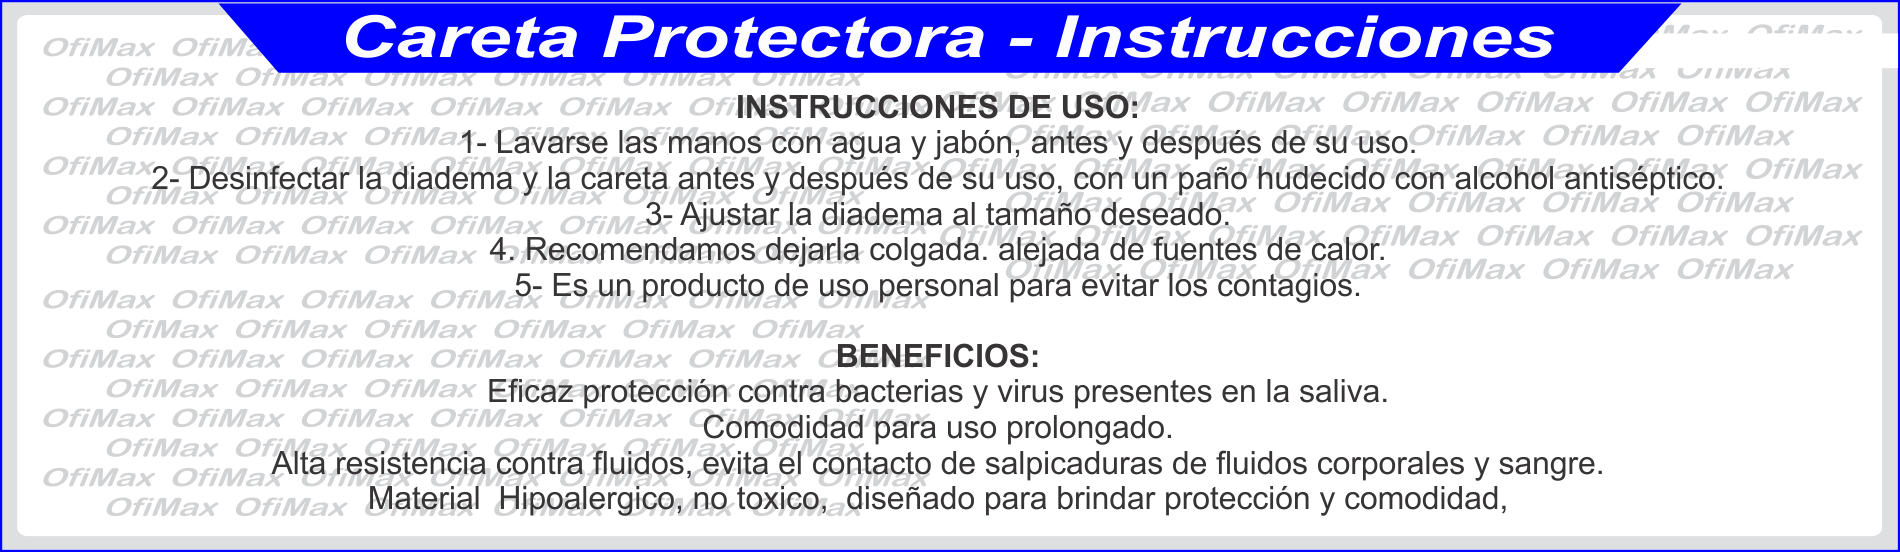 instrucciones para caretas protectoras contra fluidos, bogota, colombia